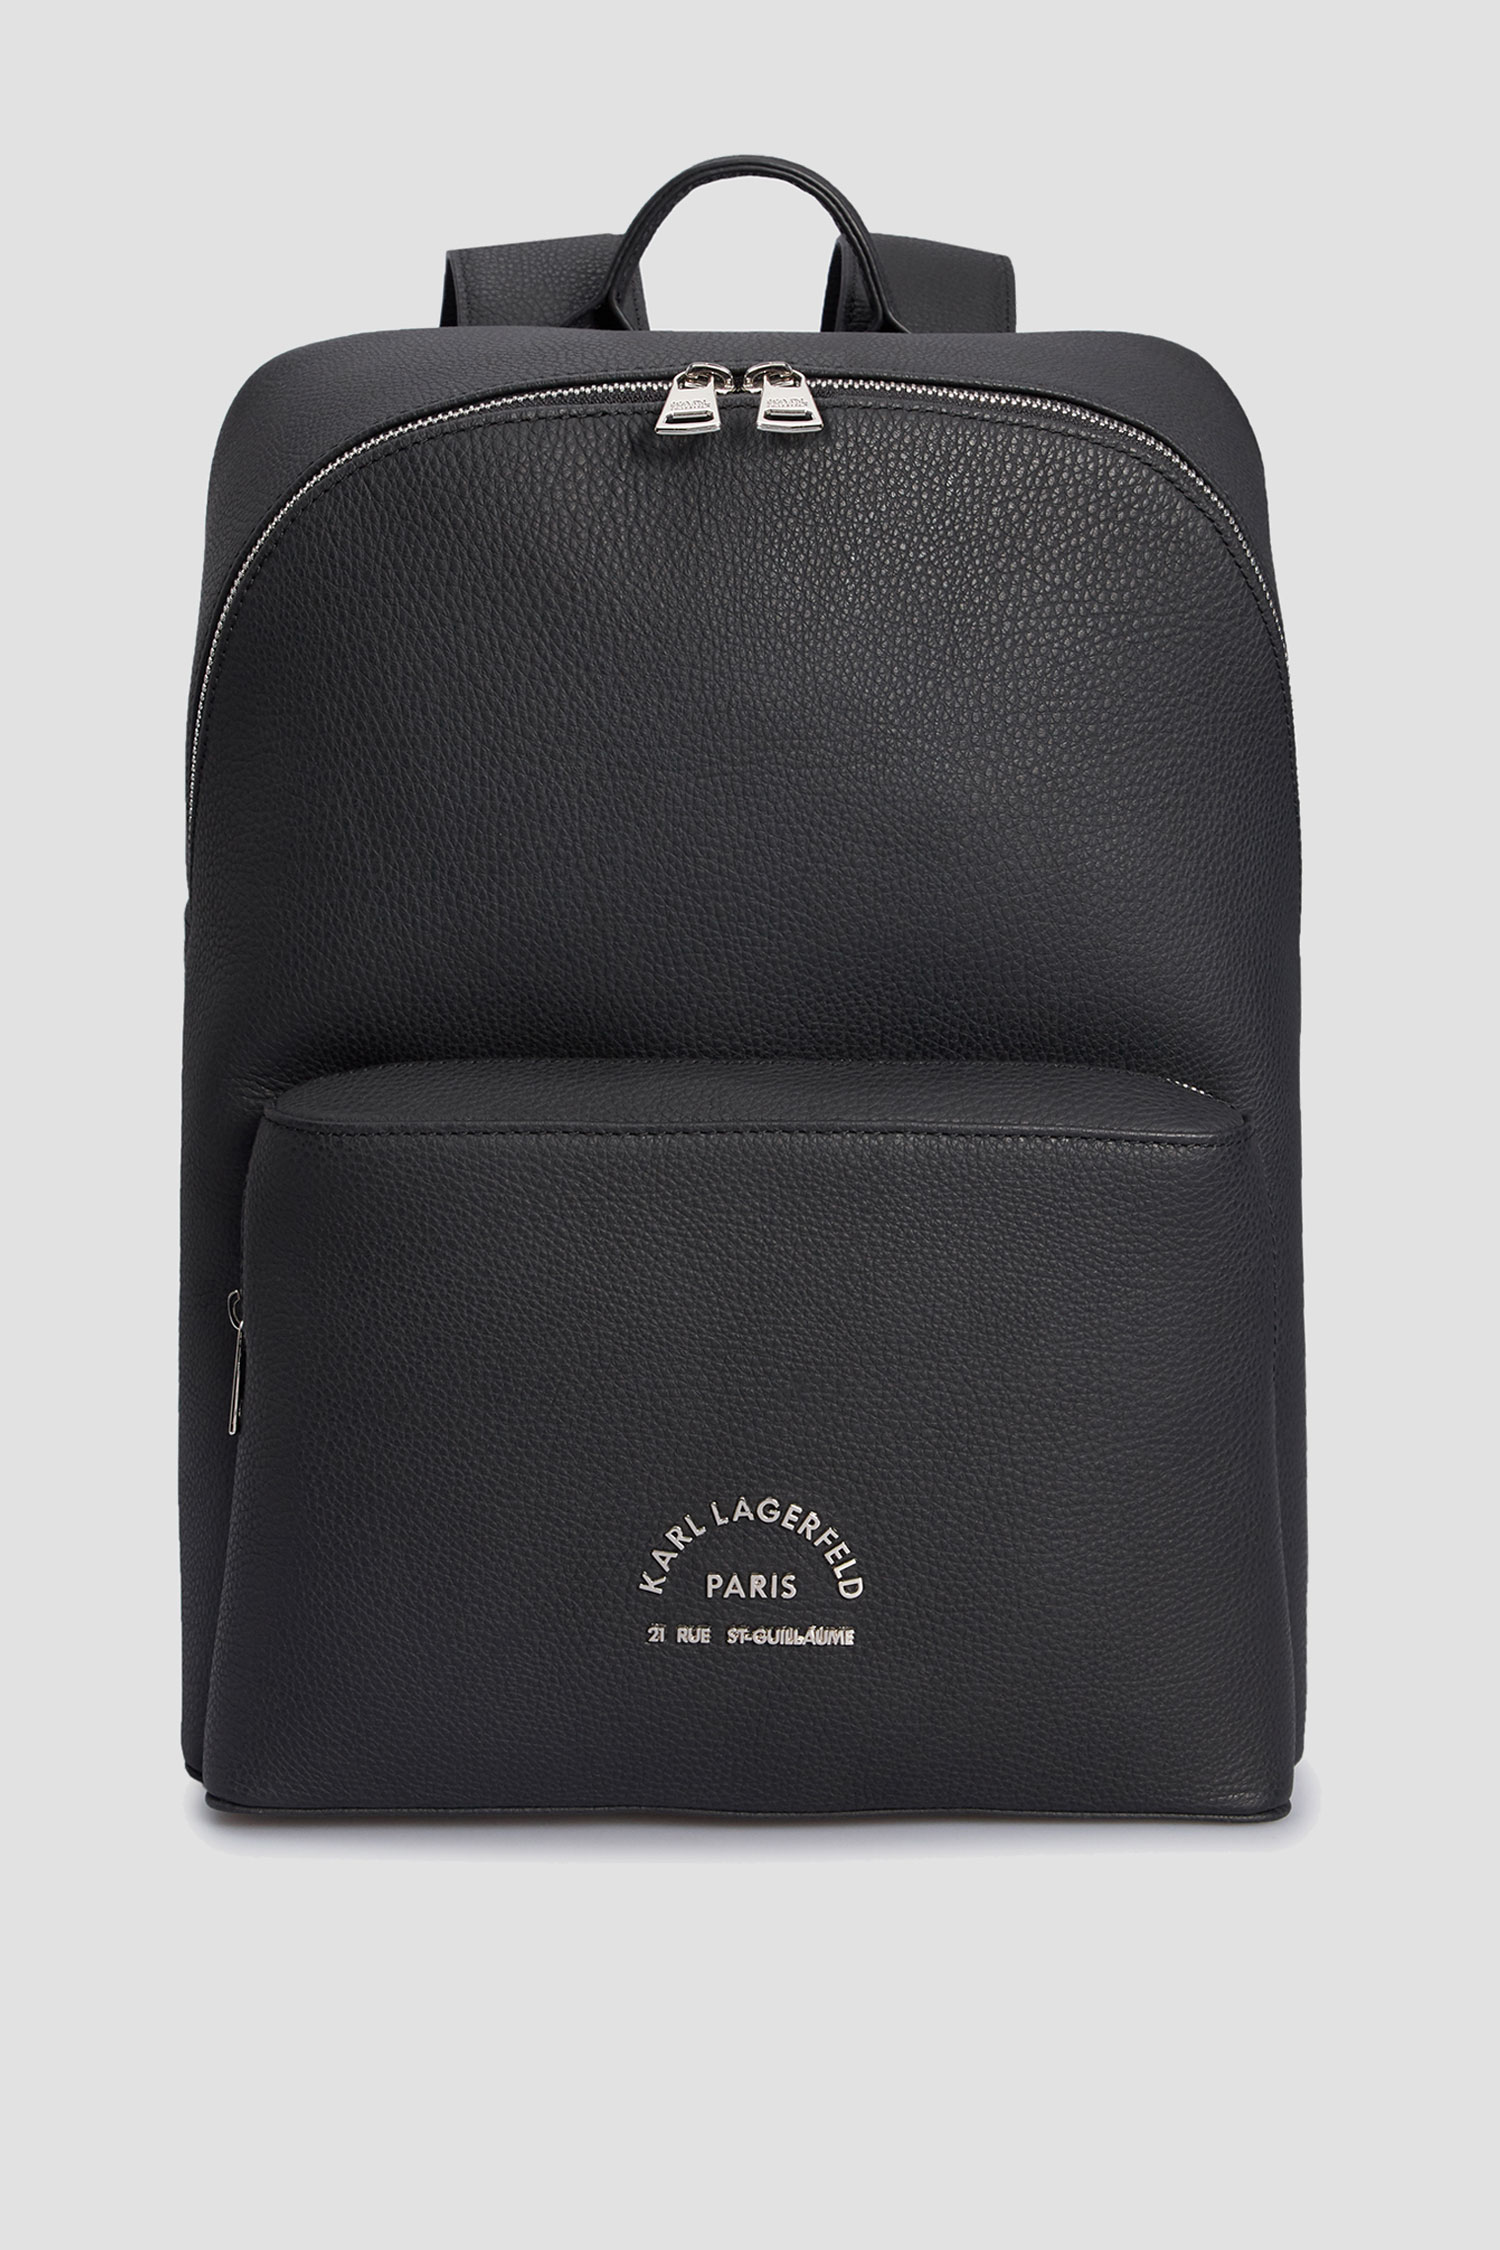 Мужской черный кожаный рюкзак Karl Lagerfeld 532451.815908;990